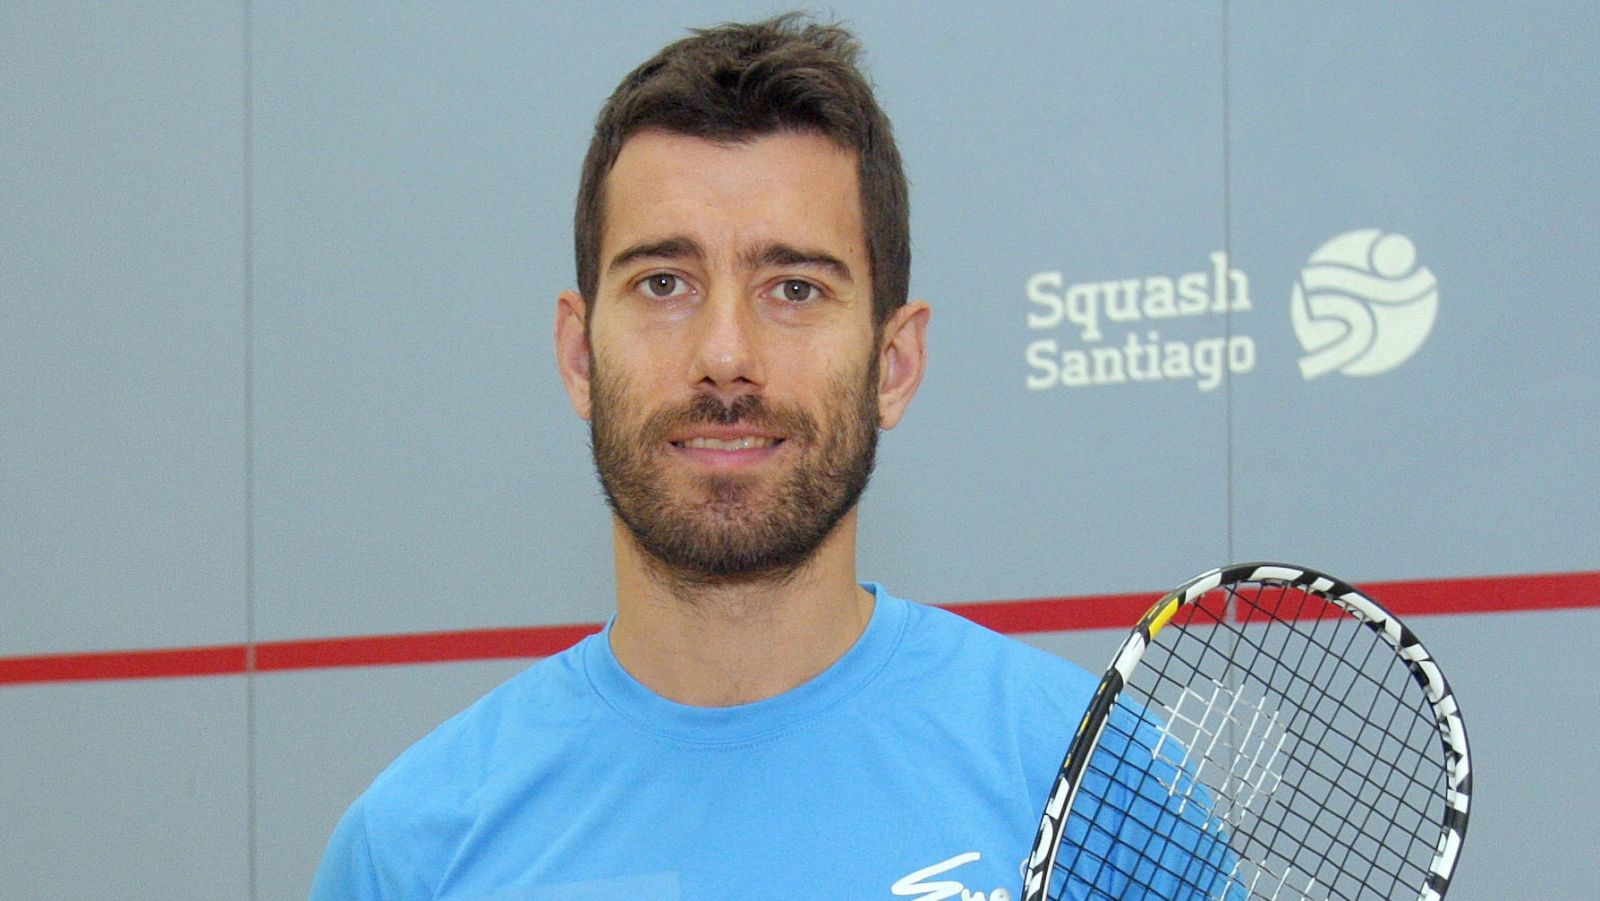 El jugador de squash español Borja Golán, en imagen de archivo.